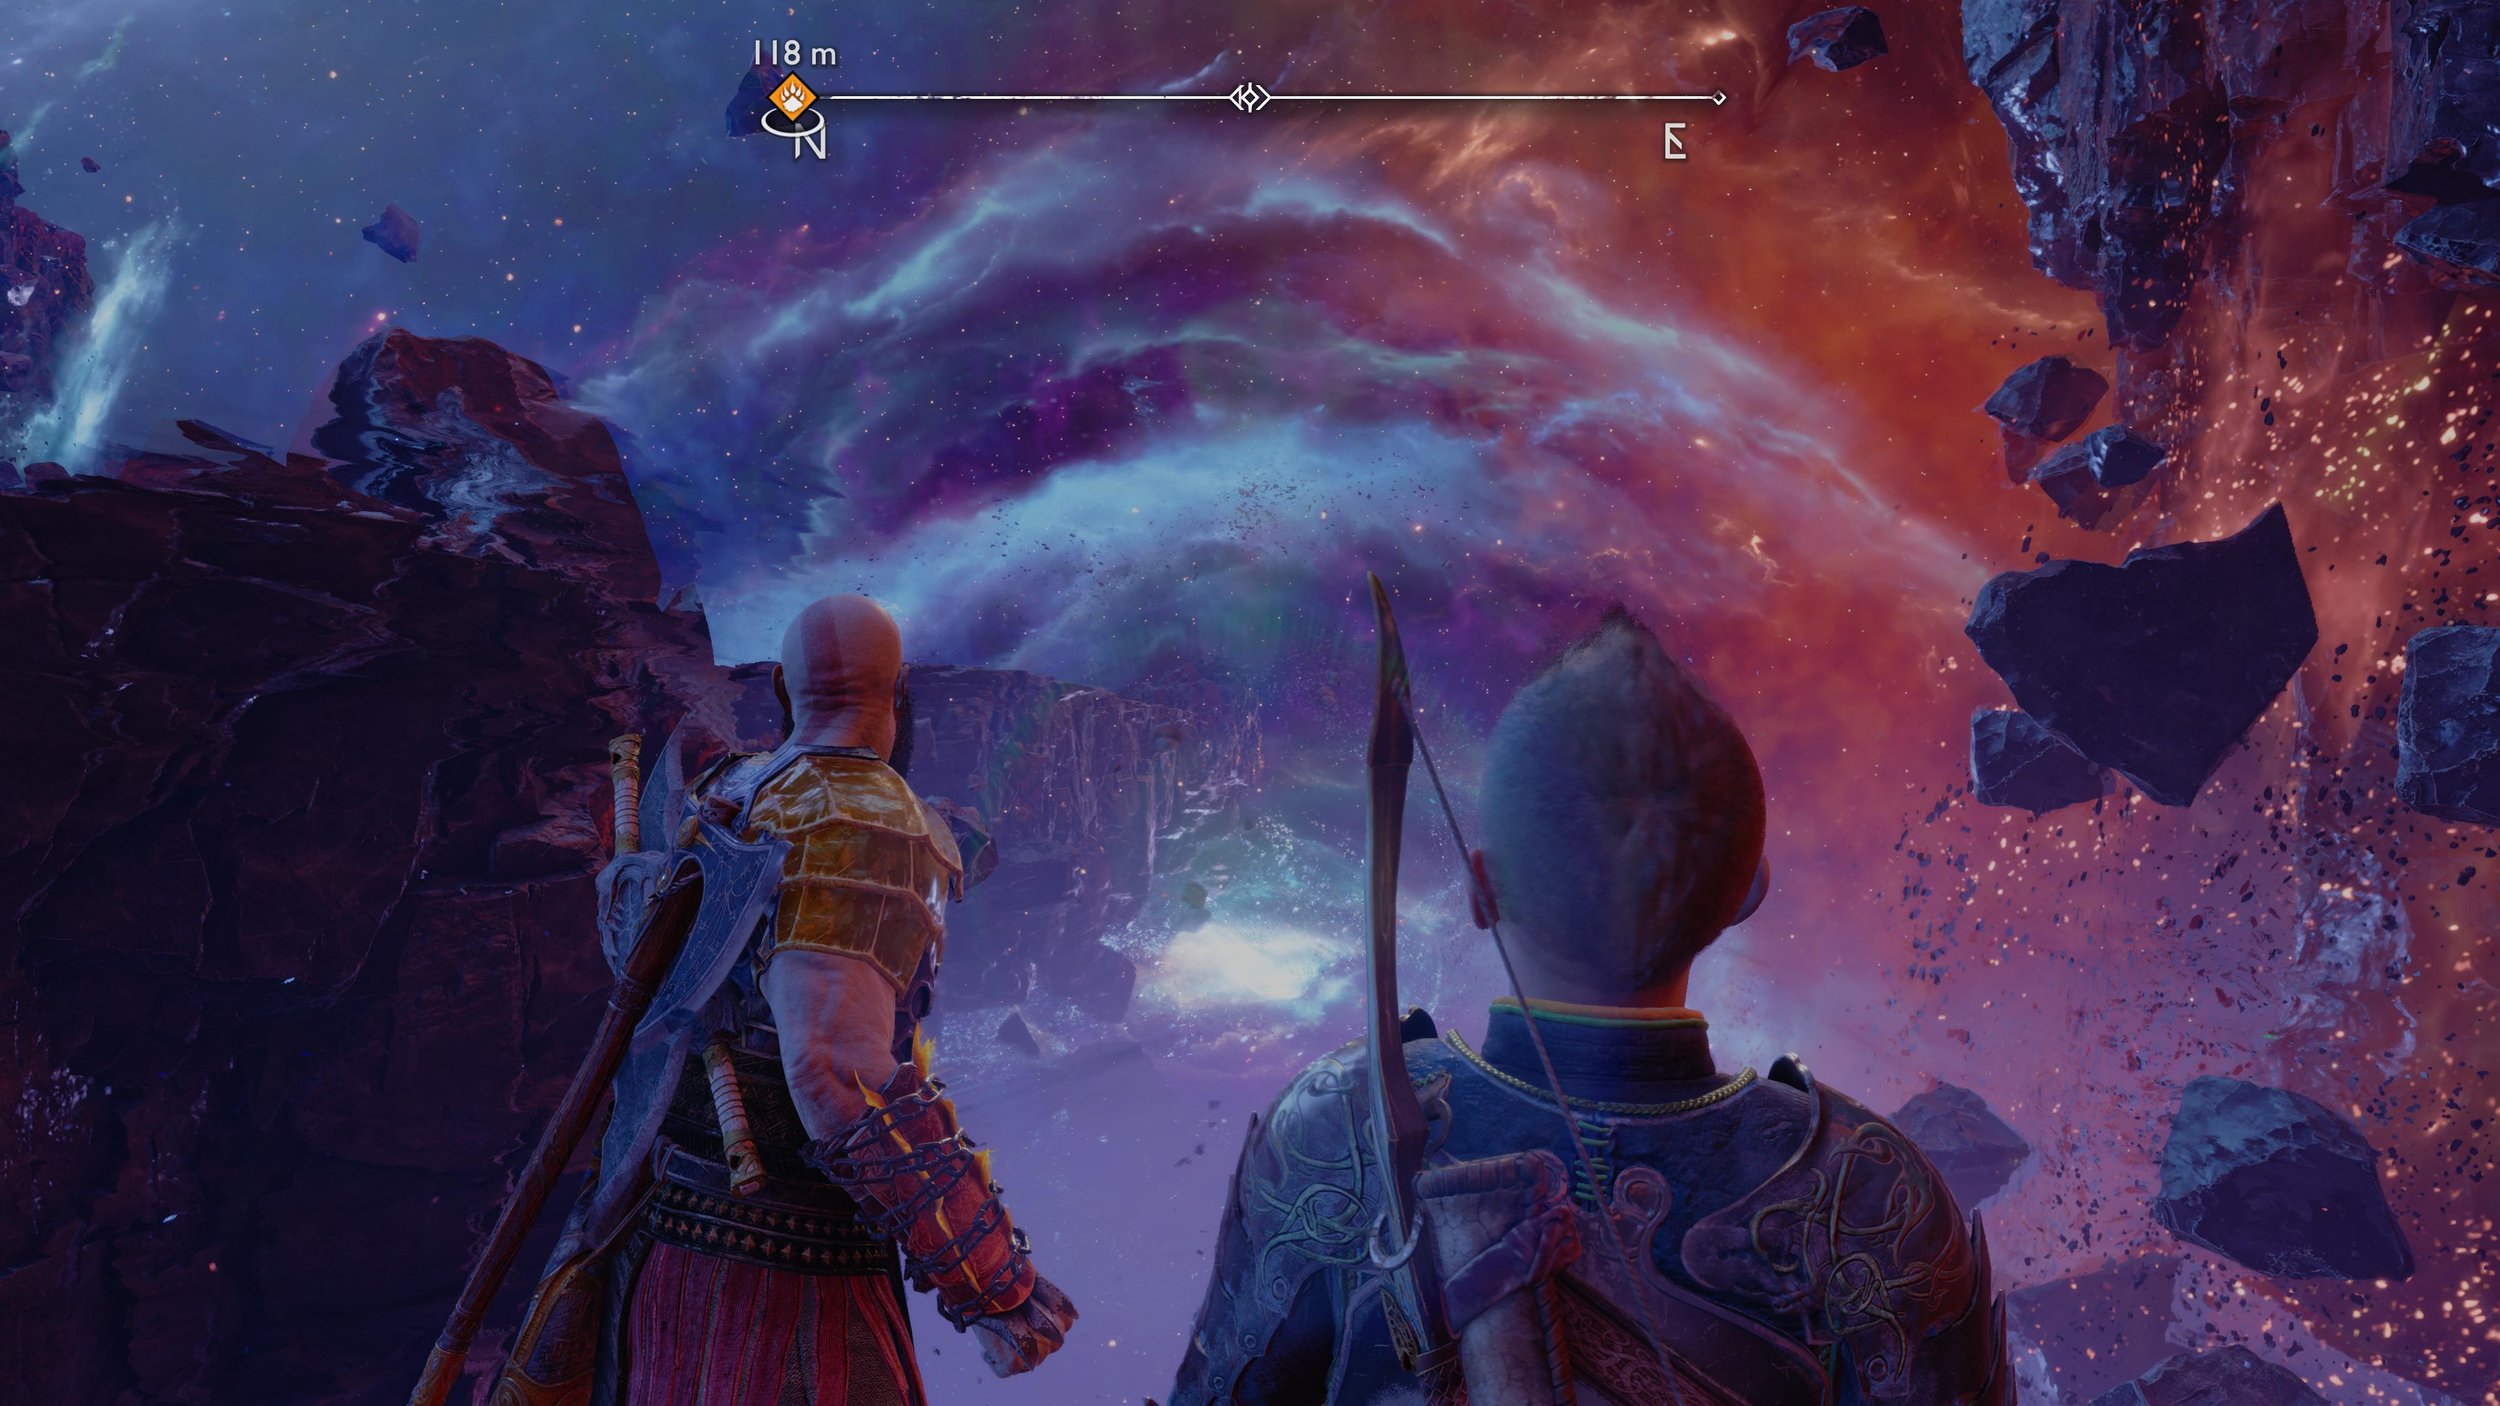 God Of War Ragnarök on PS5 PS4 — price history, screenshots